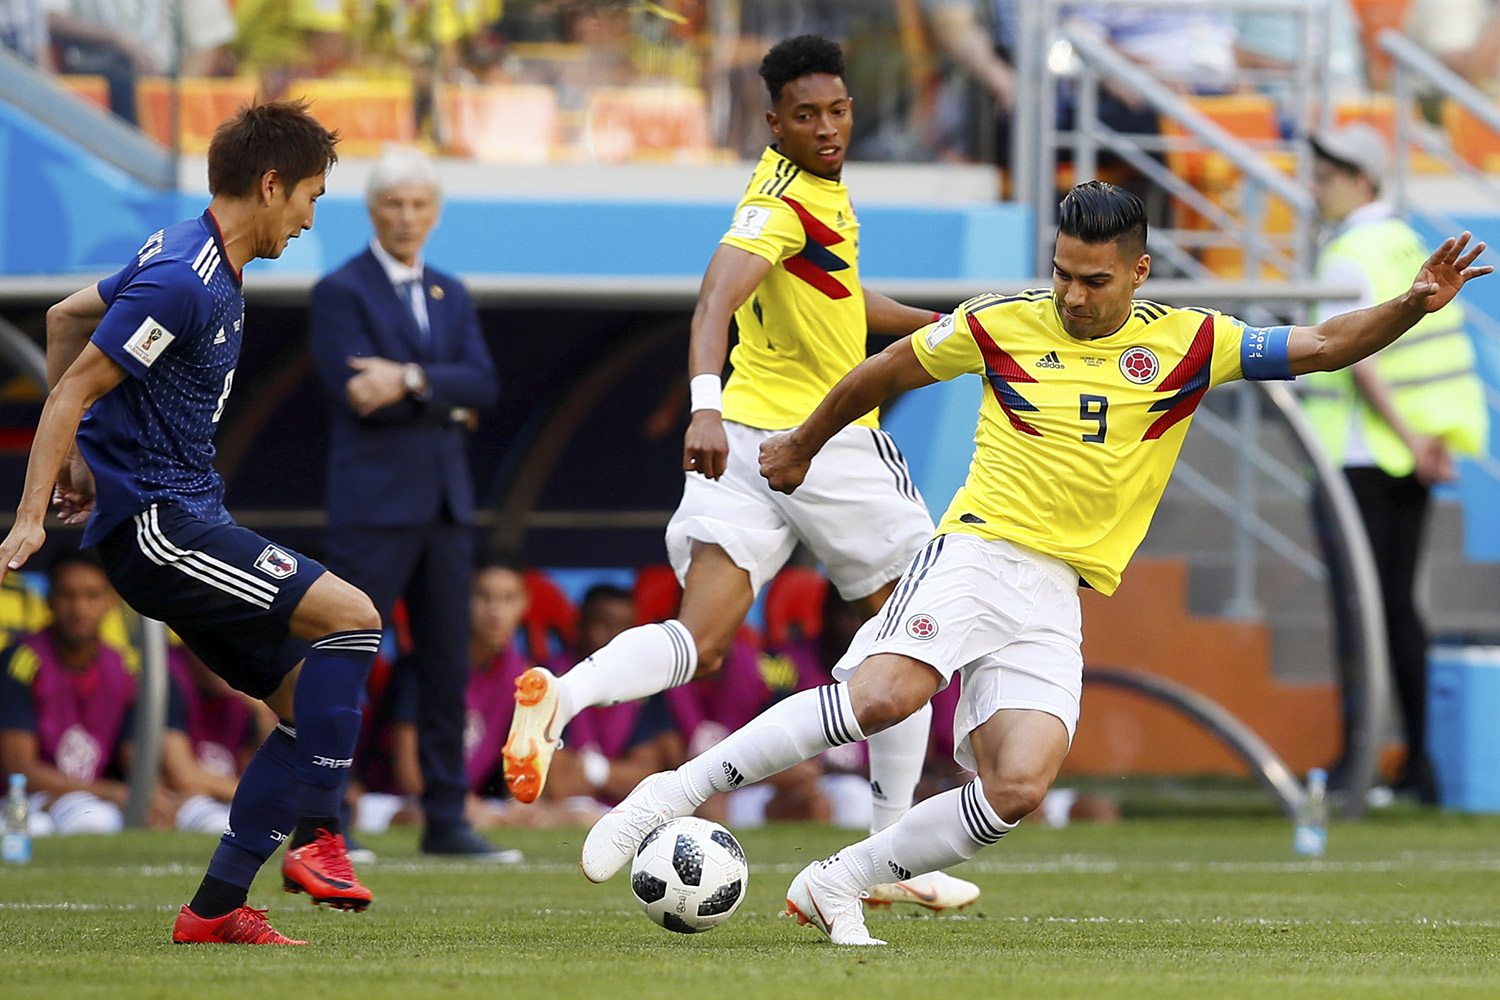 Saiba como assistir a Polônia x Colômbia pela Copa do Mundo 2018